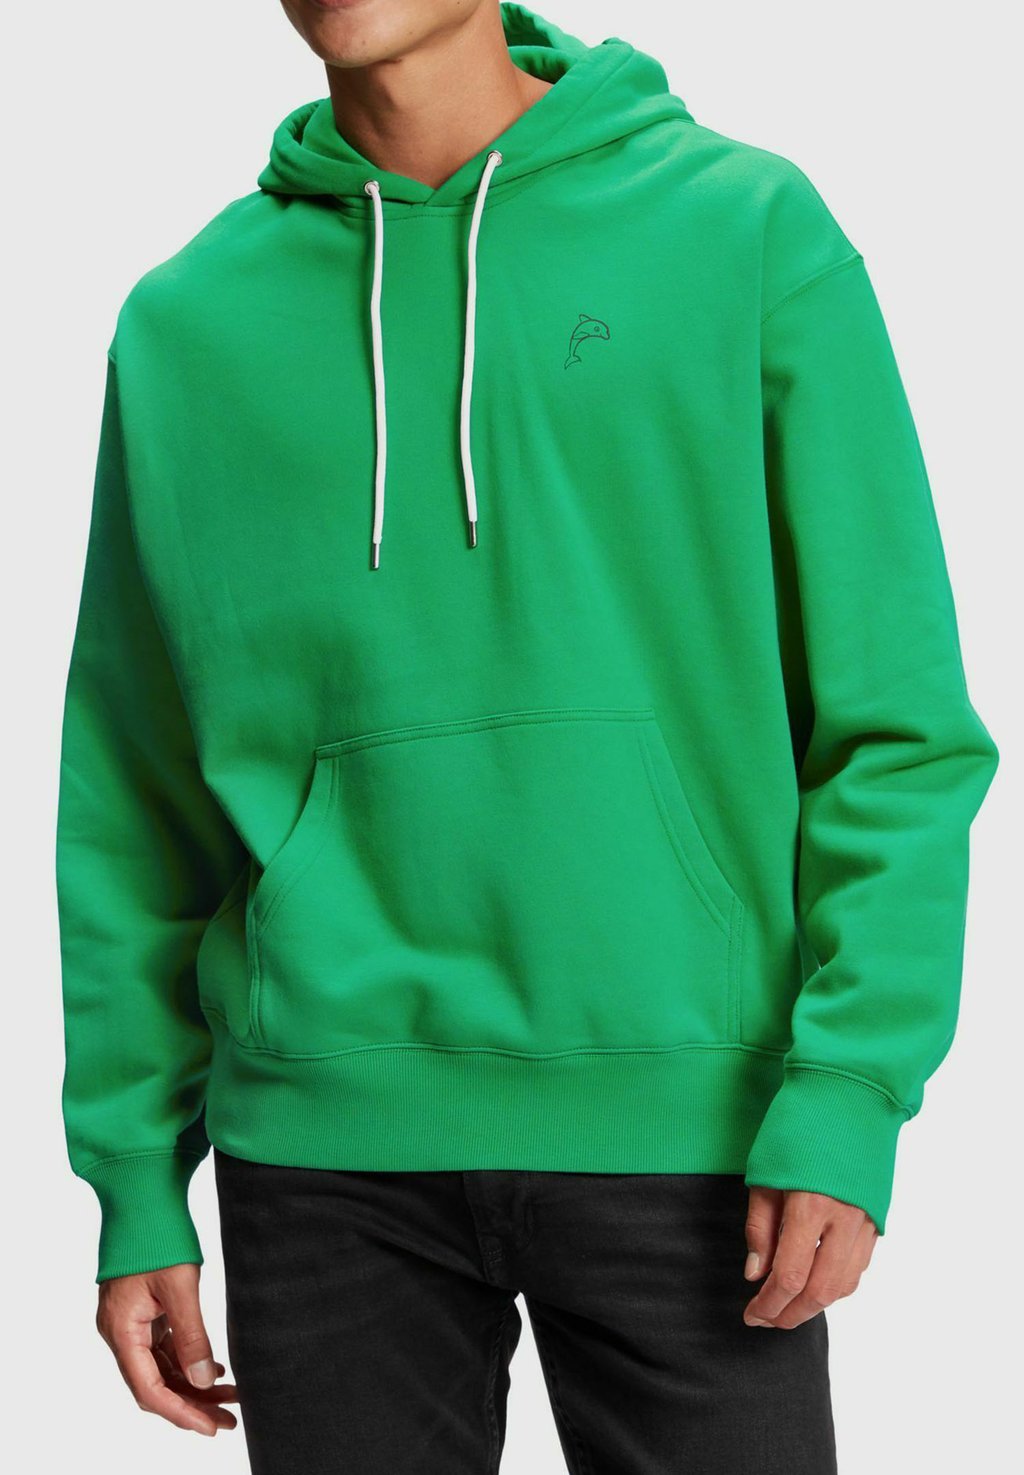 Green hoodie rust фото 48